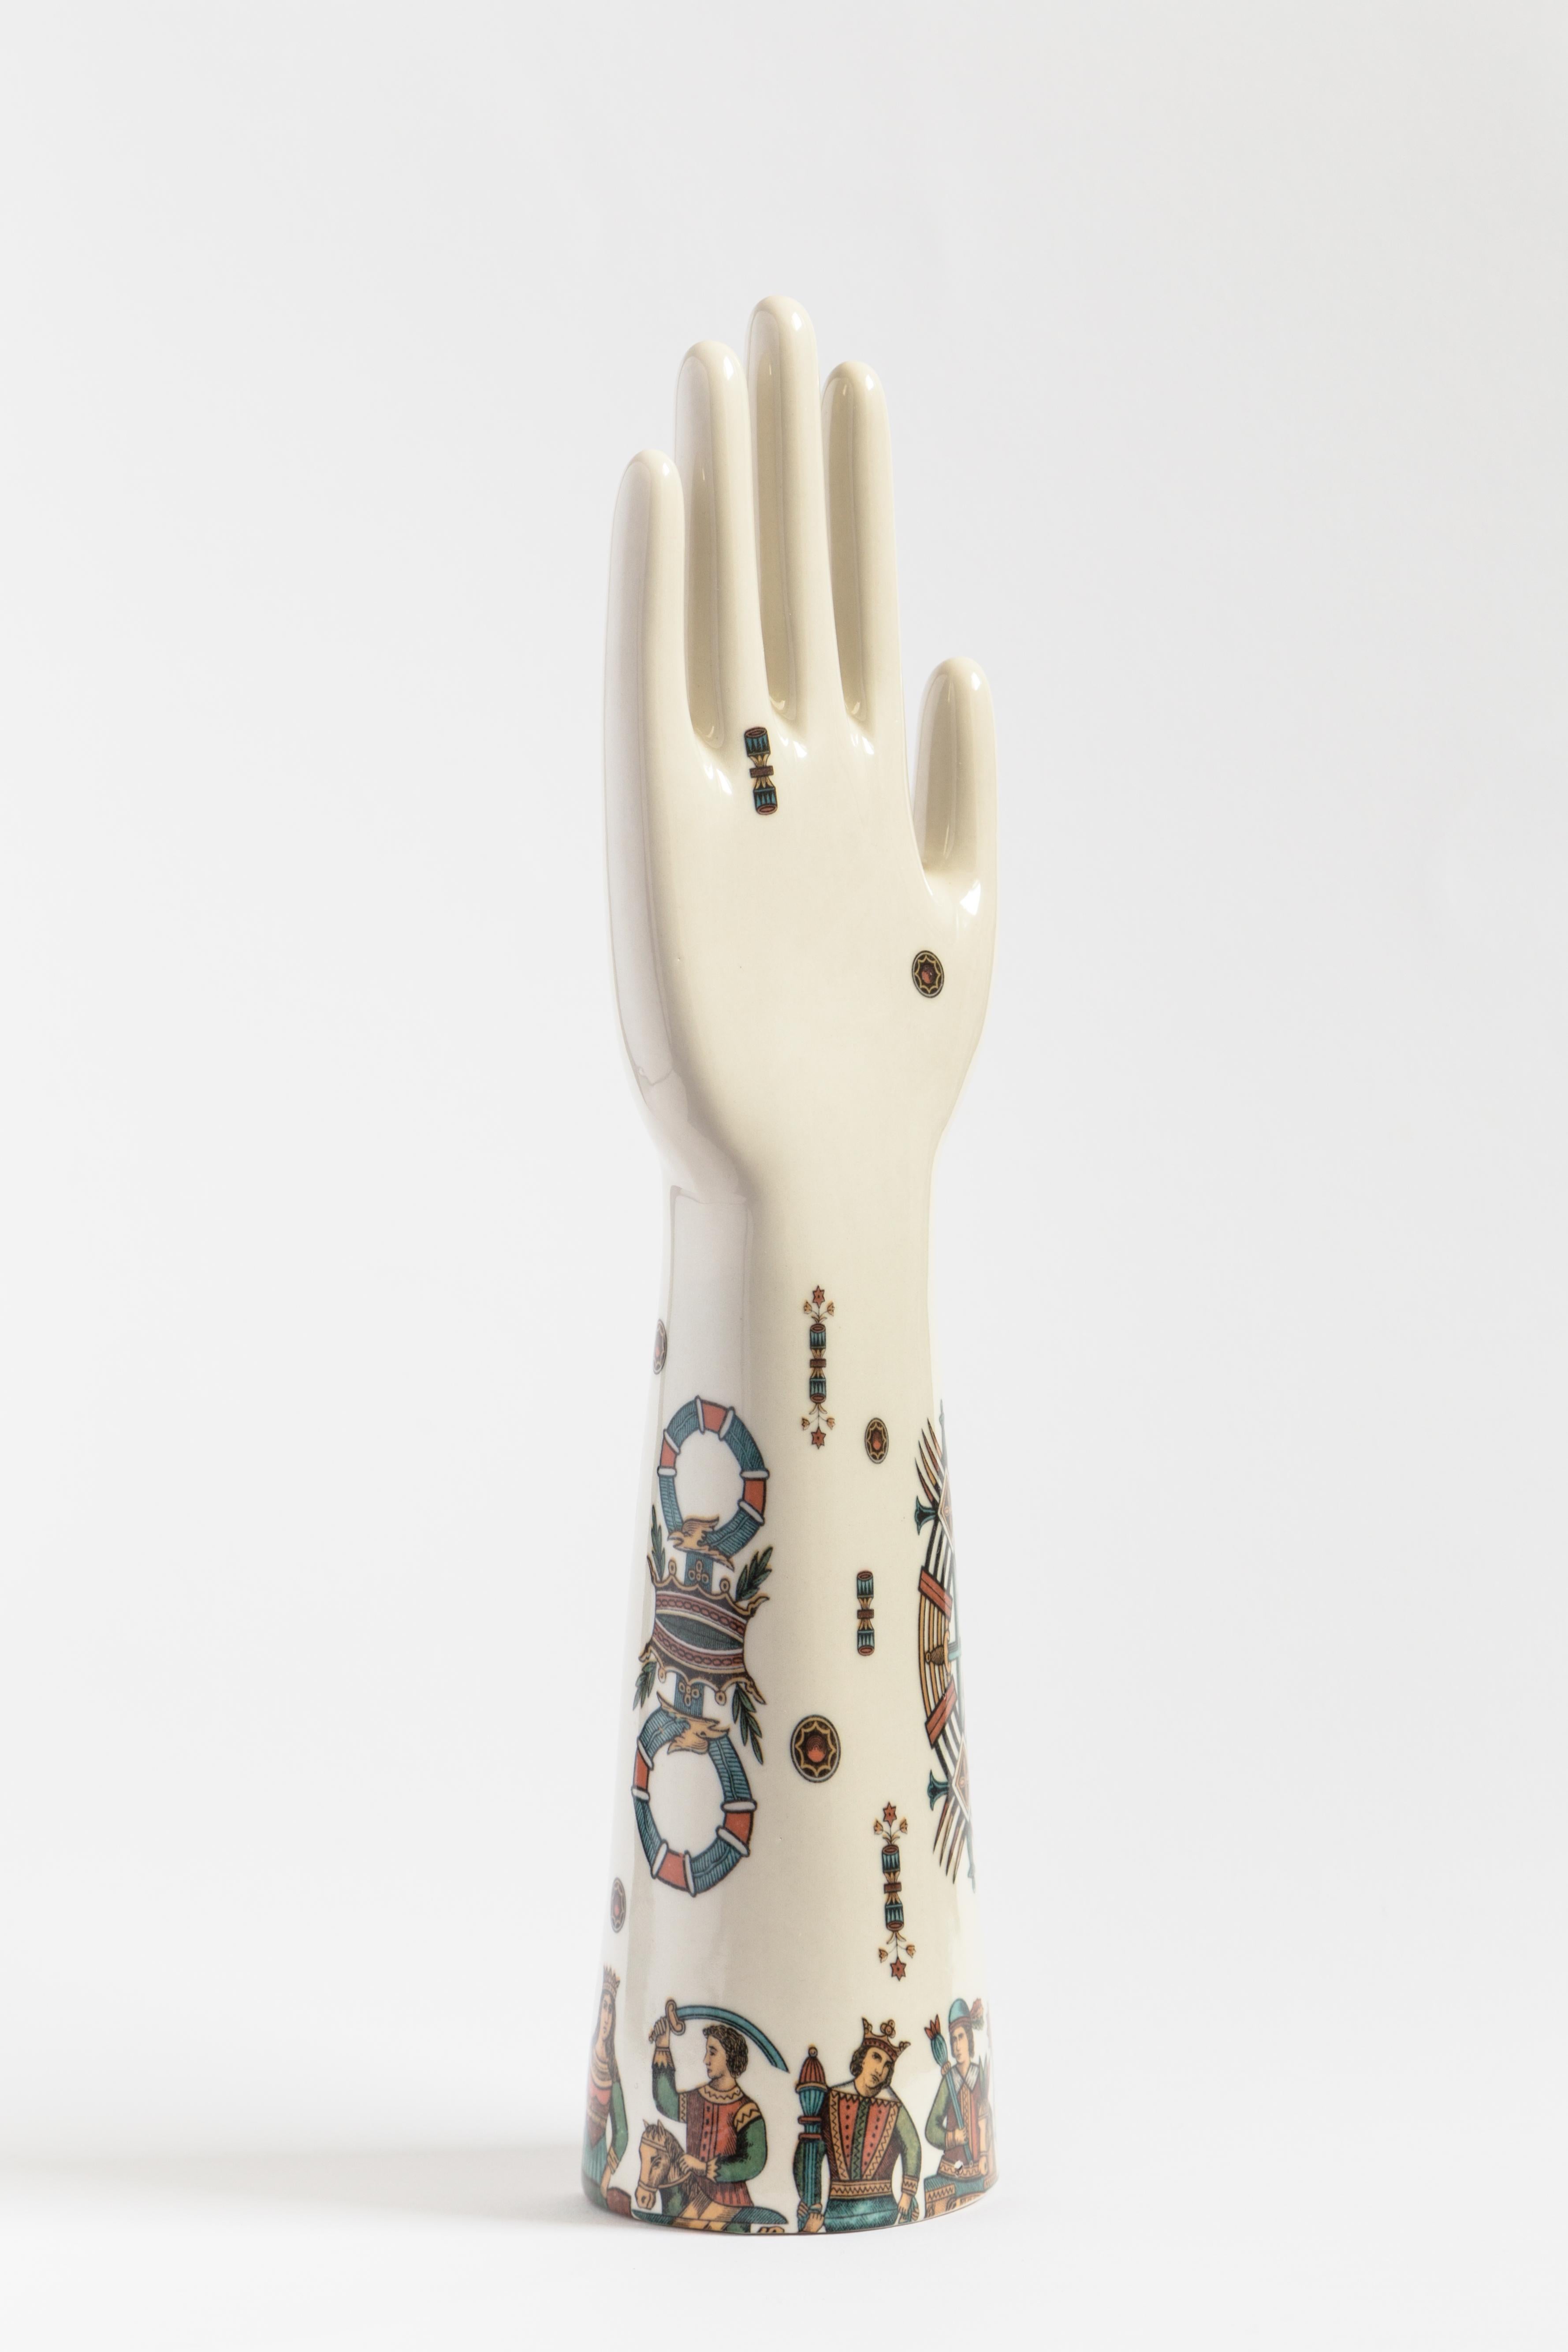 Cette sculpture saisissante fait partie de la série Anatomica de Vito Nesta, qui présente des objets décoratifs aux formes anatomiques simples et essentielles, caractérisés par des couleurs audacieuses et contrastées et un flair moderne. Réalisée en